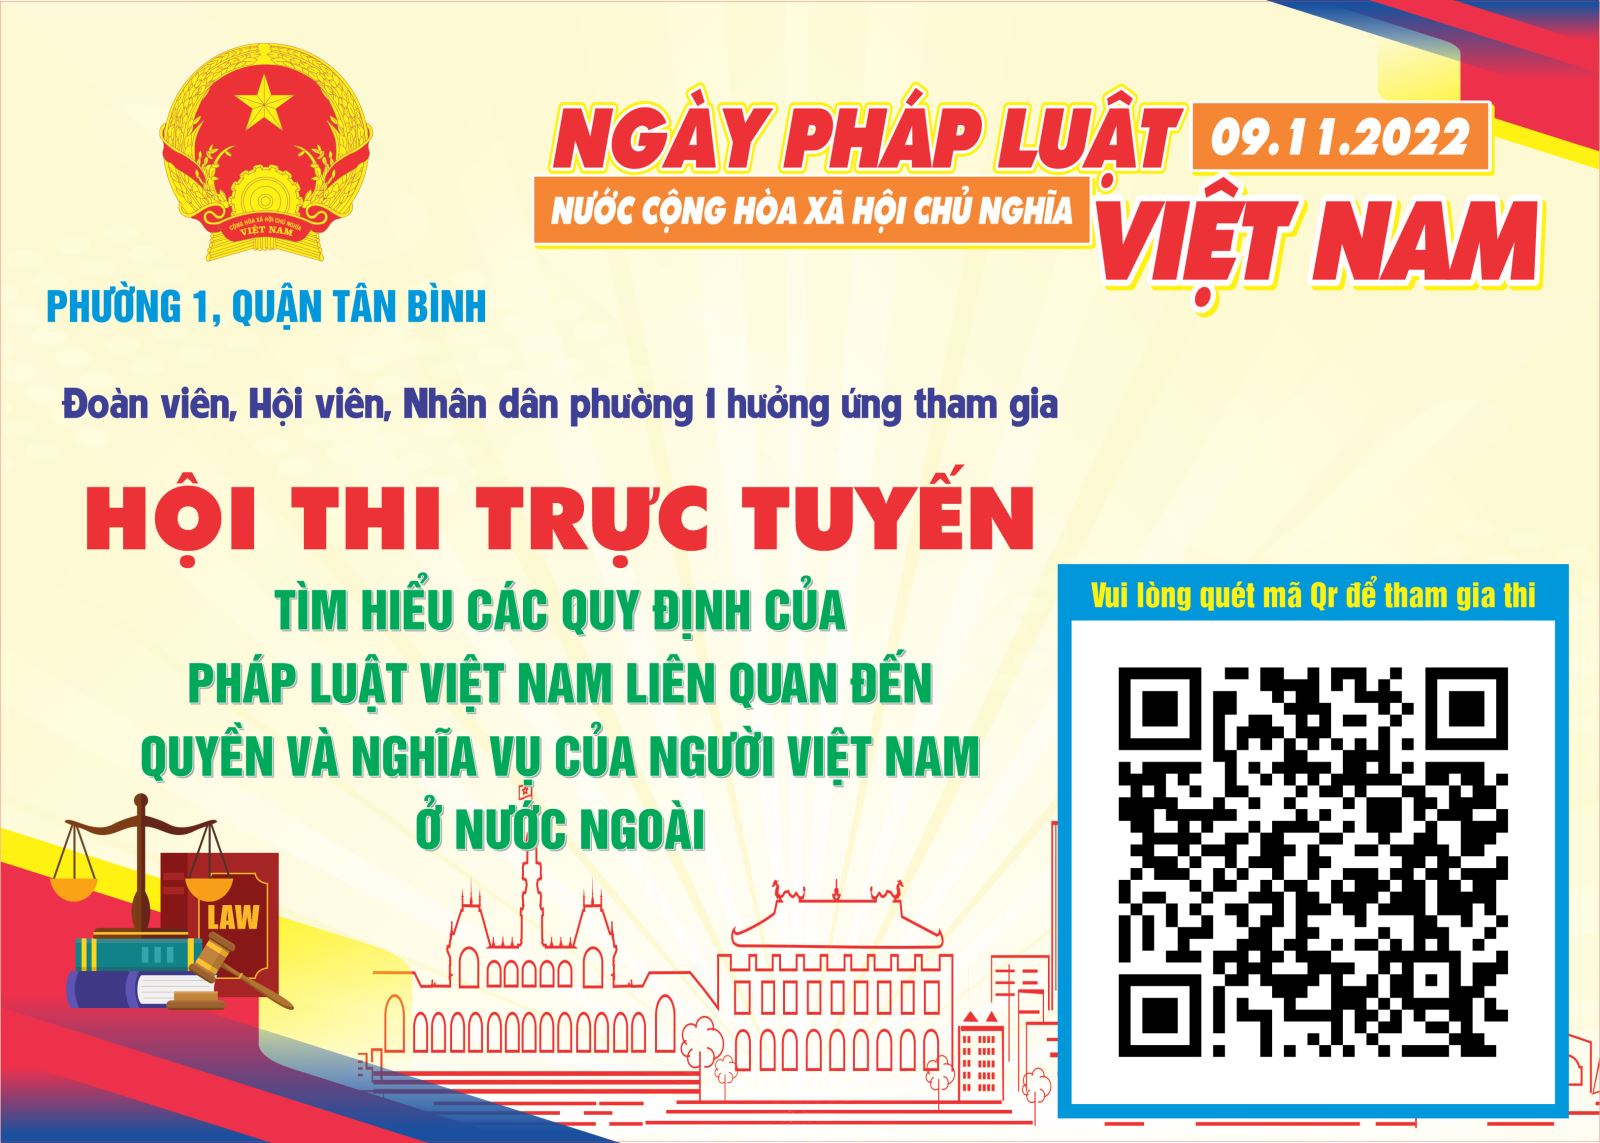 Hội thi trực tuyến tìm hiểu các quy định của pháp luật liên quan đến quyền và nghĩa vụ của người Việt Nam ở nước ngoài